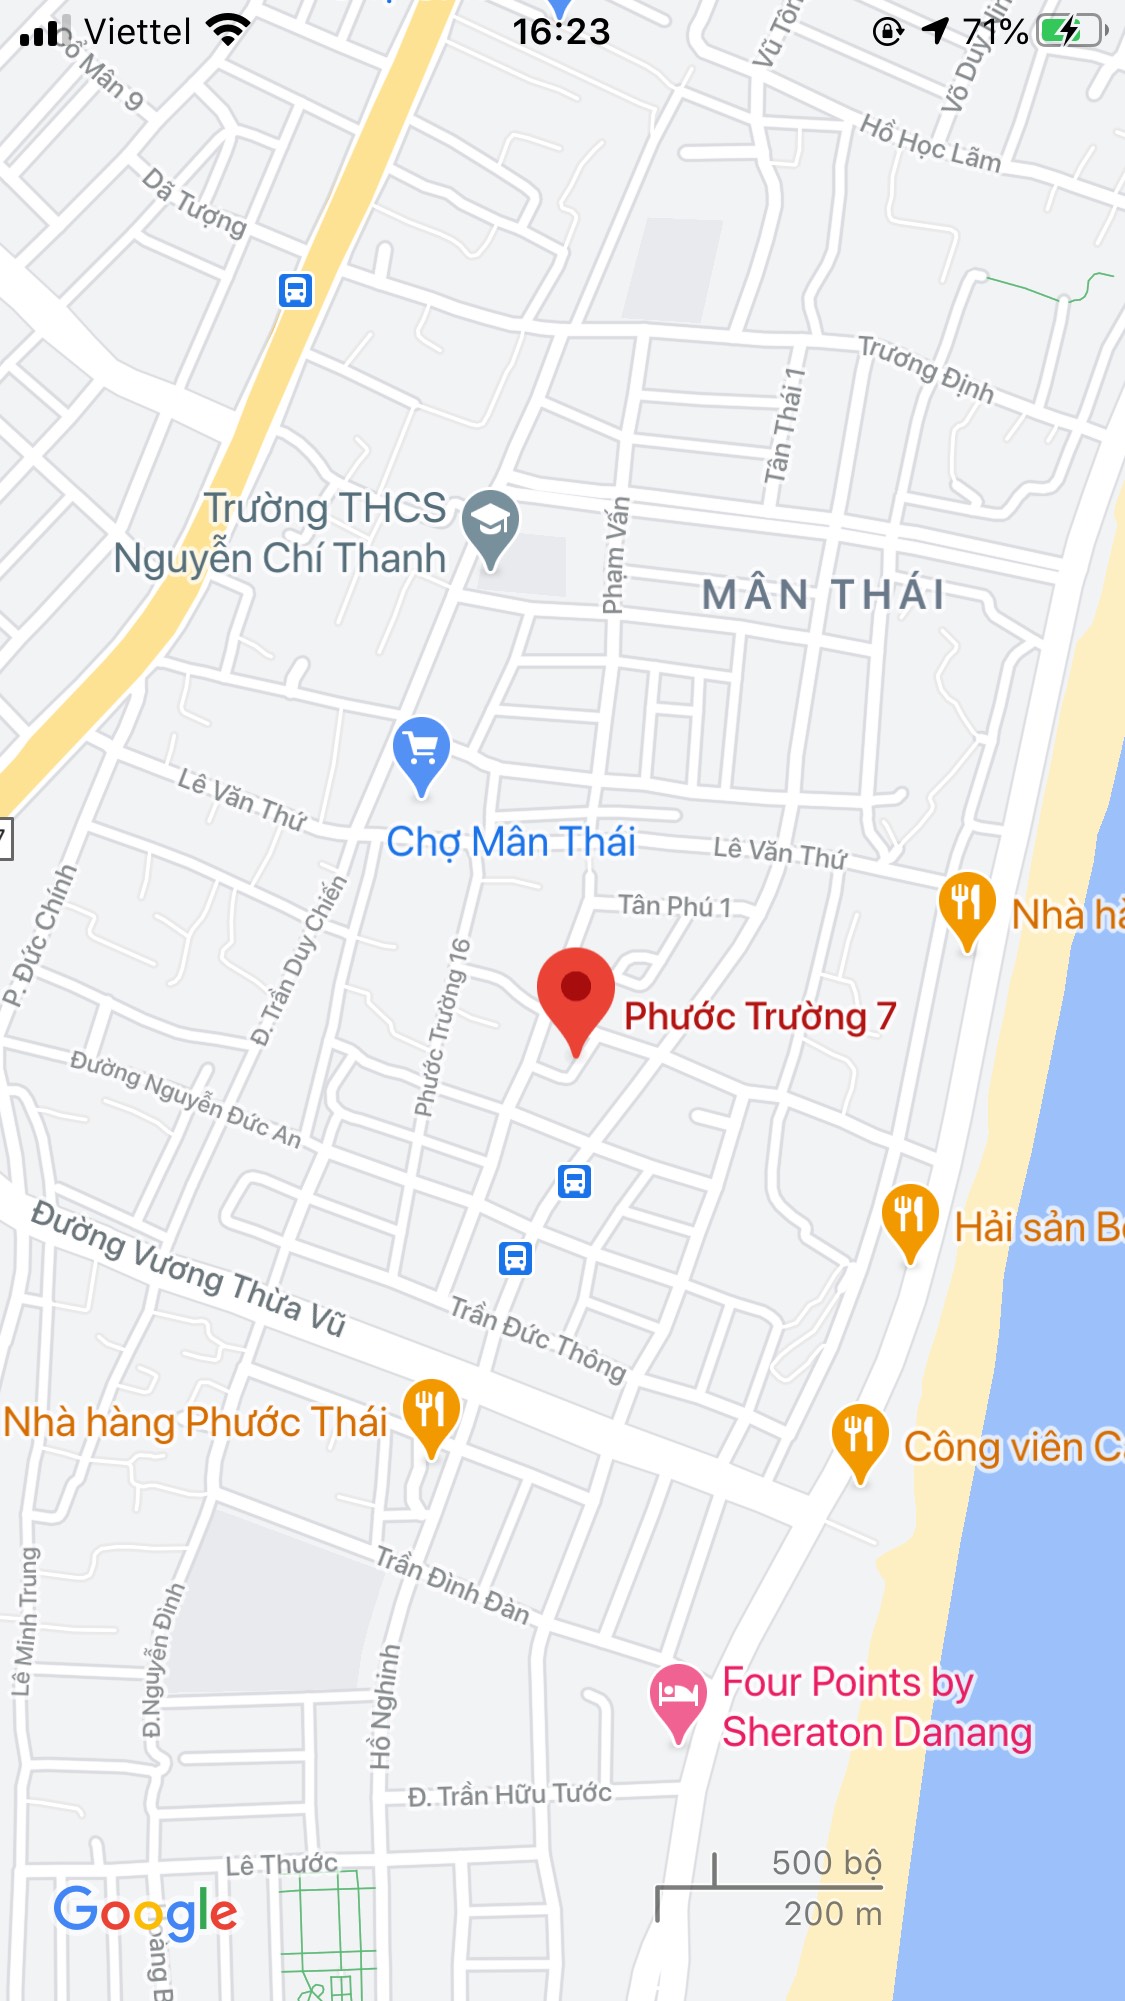 Bán nhà mặt phố đường Phước Trường 7, Phường Phước Mỹ, Quận Sơn Trà. DT: 80 m2. Giá: 6 tỷ